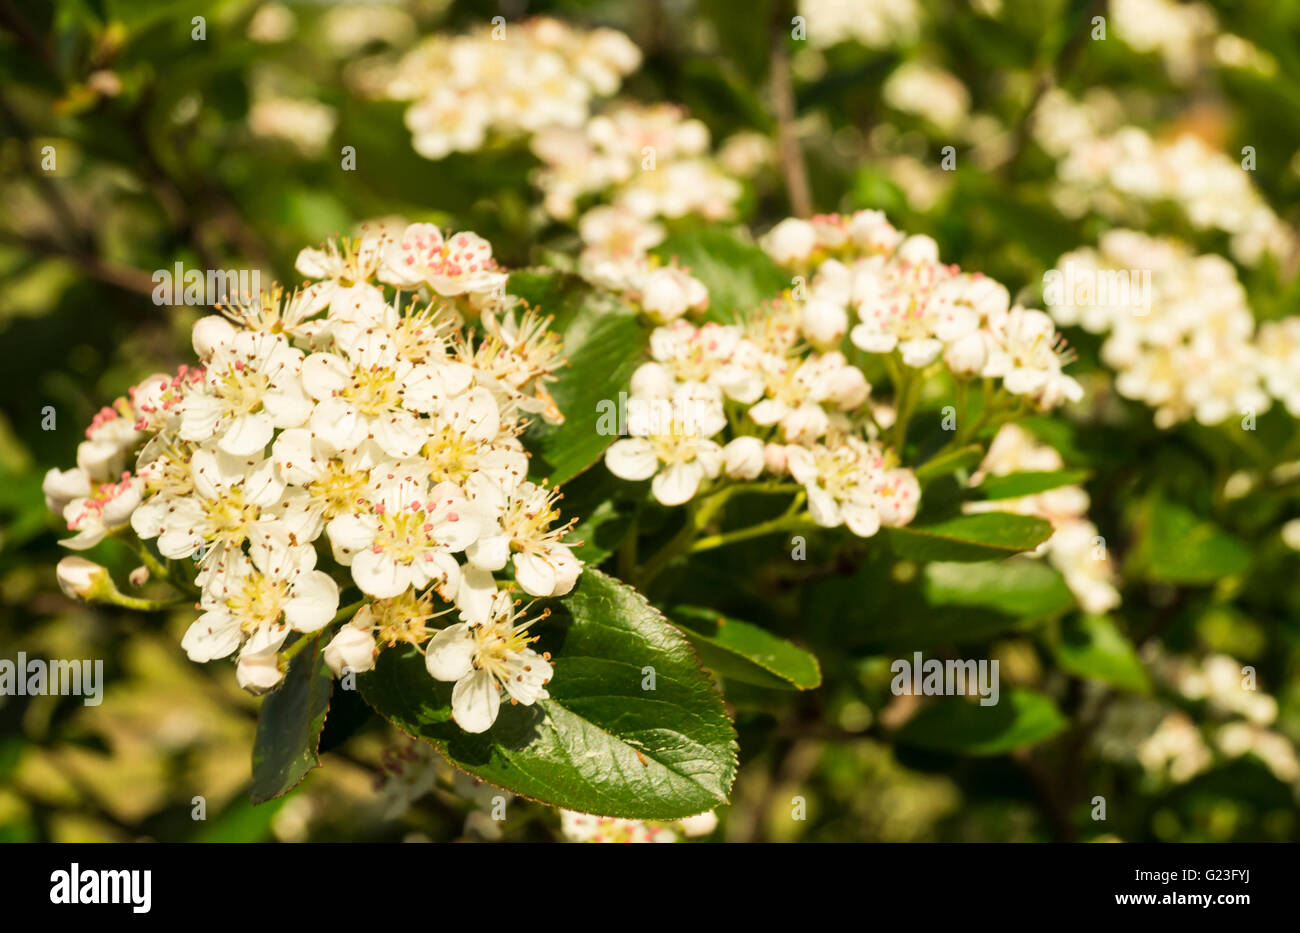 Spring Blossom von Rowanberry(Aronia melanocarpa) im Garten am Zweig mit grünen Blatt Stockfoto